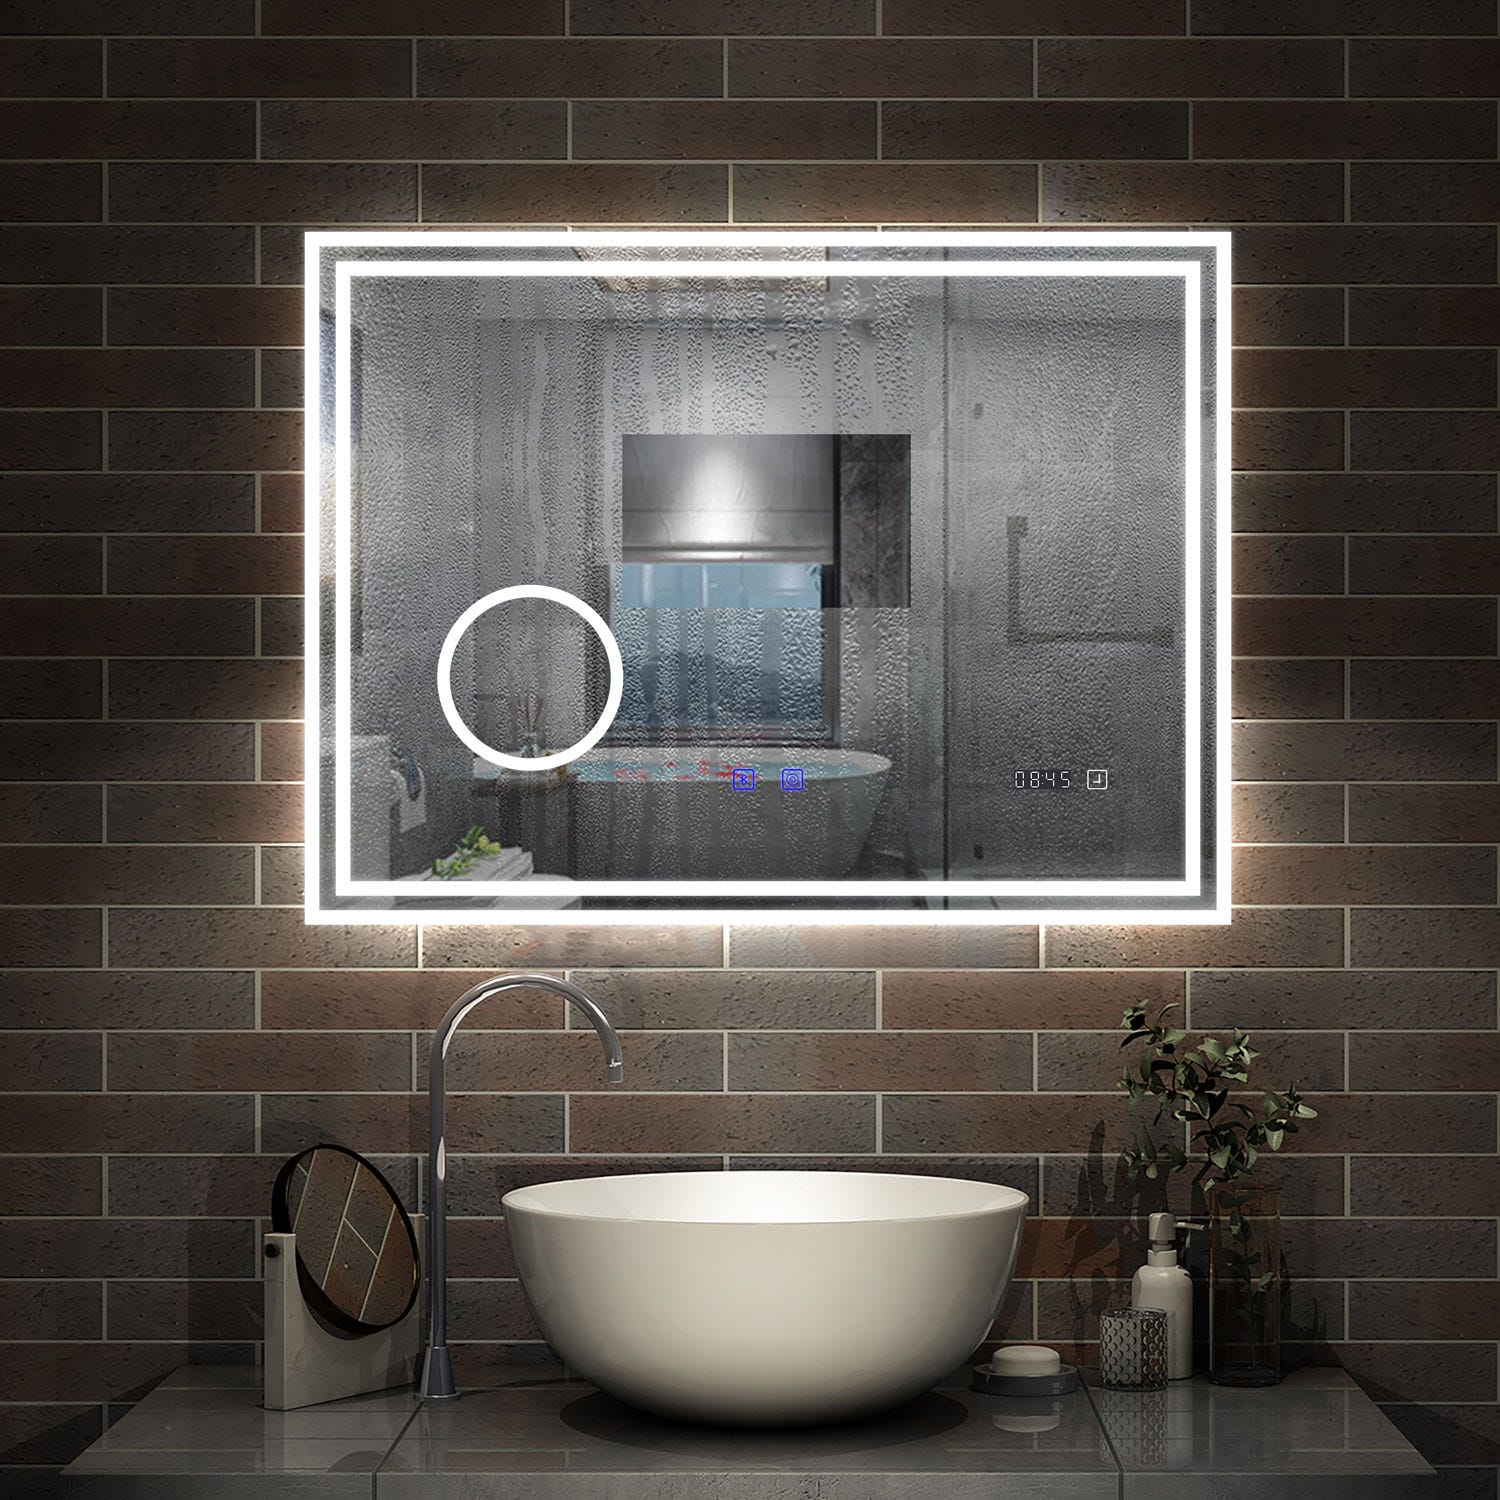 AICA LED miroir 140x80cm horloge + bluetooth + miroir grossissant + tricolore + tactile + anti-buée, suspendu horizontalement ,miroir salle de bain 2